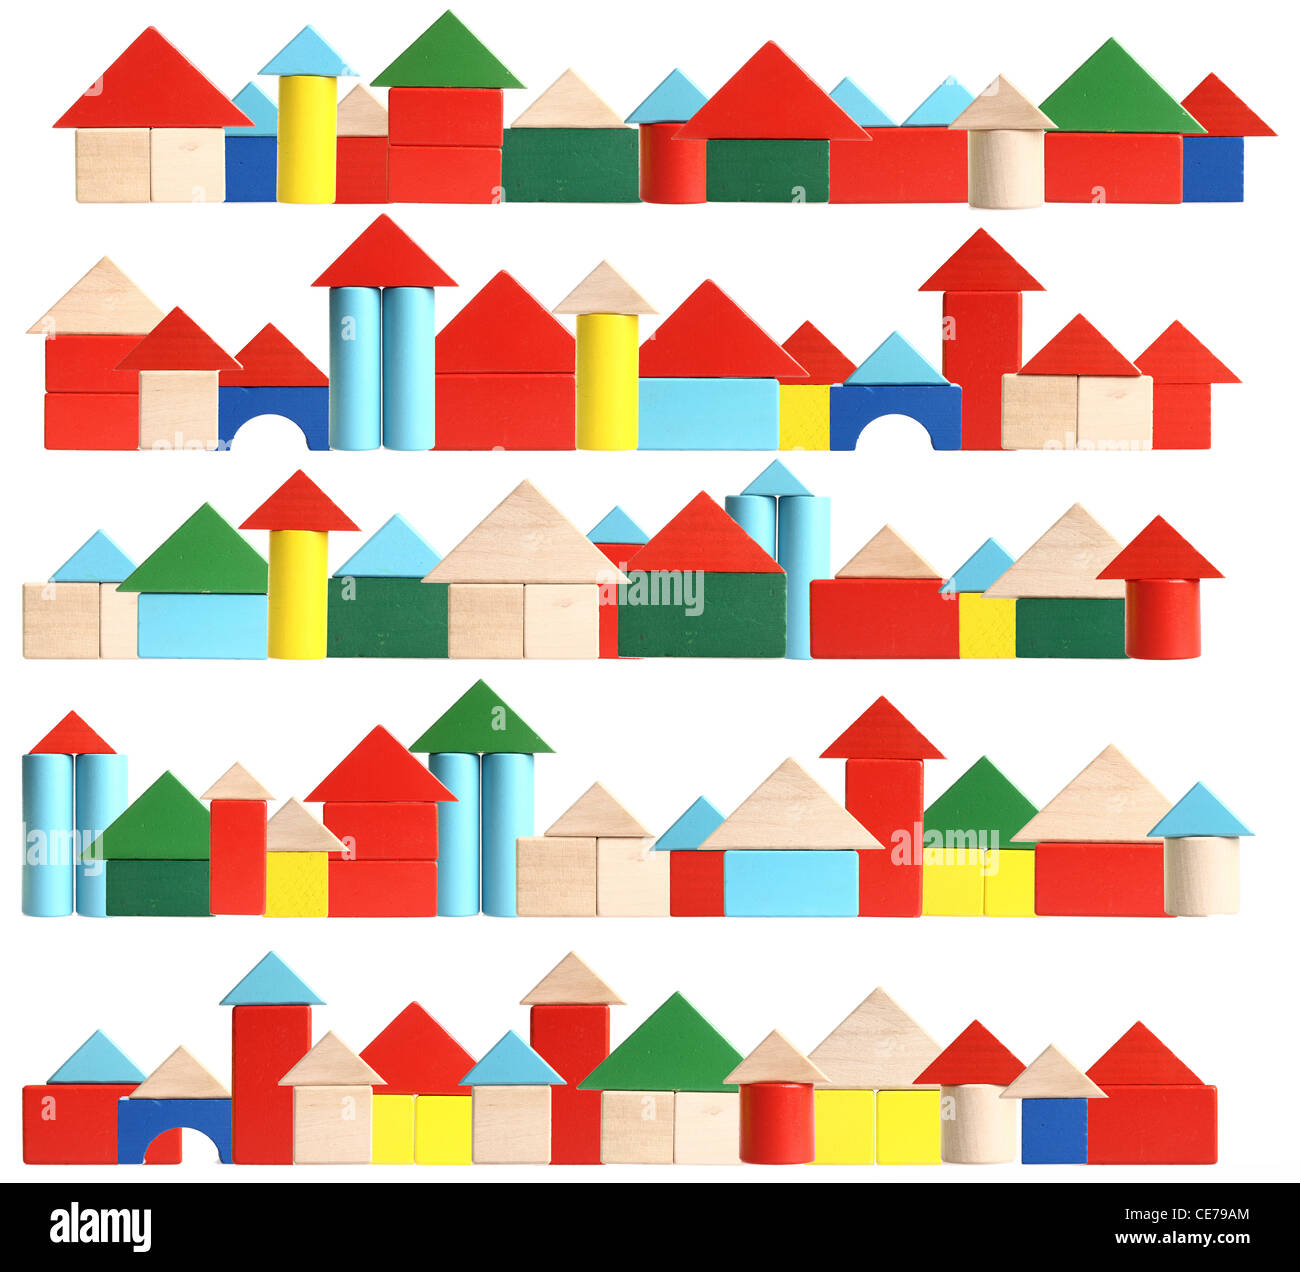 Imagen de símbolo. Viviendo en un pueblo, ciudad, aldea, vivienda. Coloridos bloques de construcción, hecha de madera. Juguetes. Foto de stock